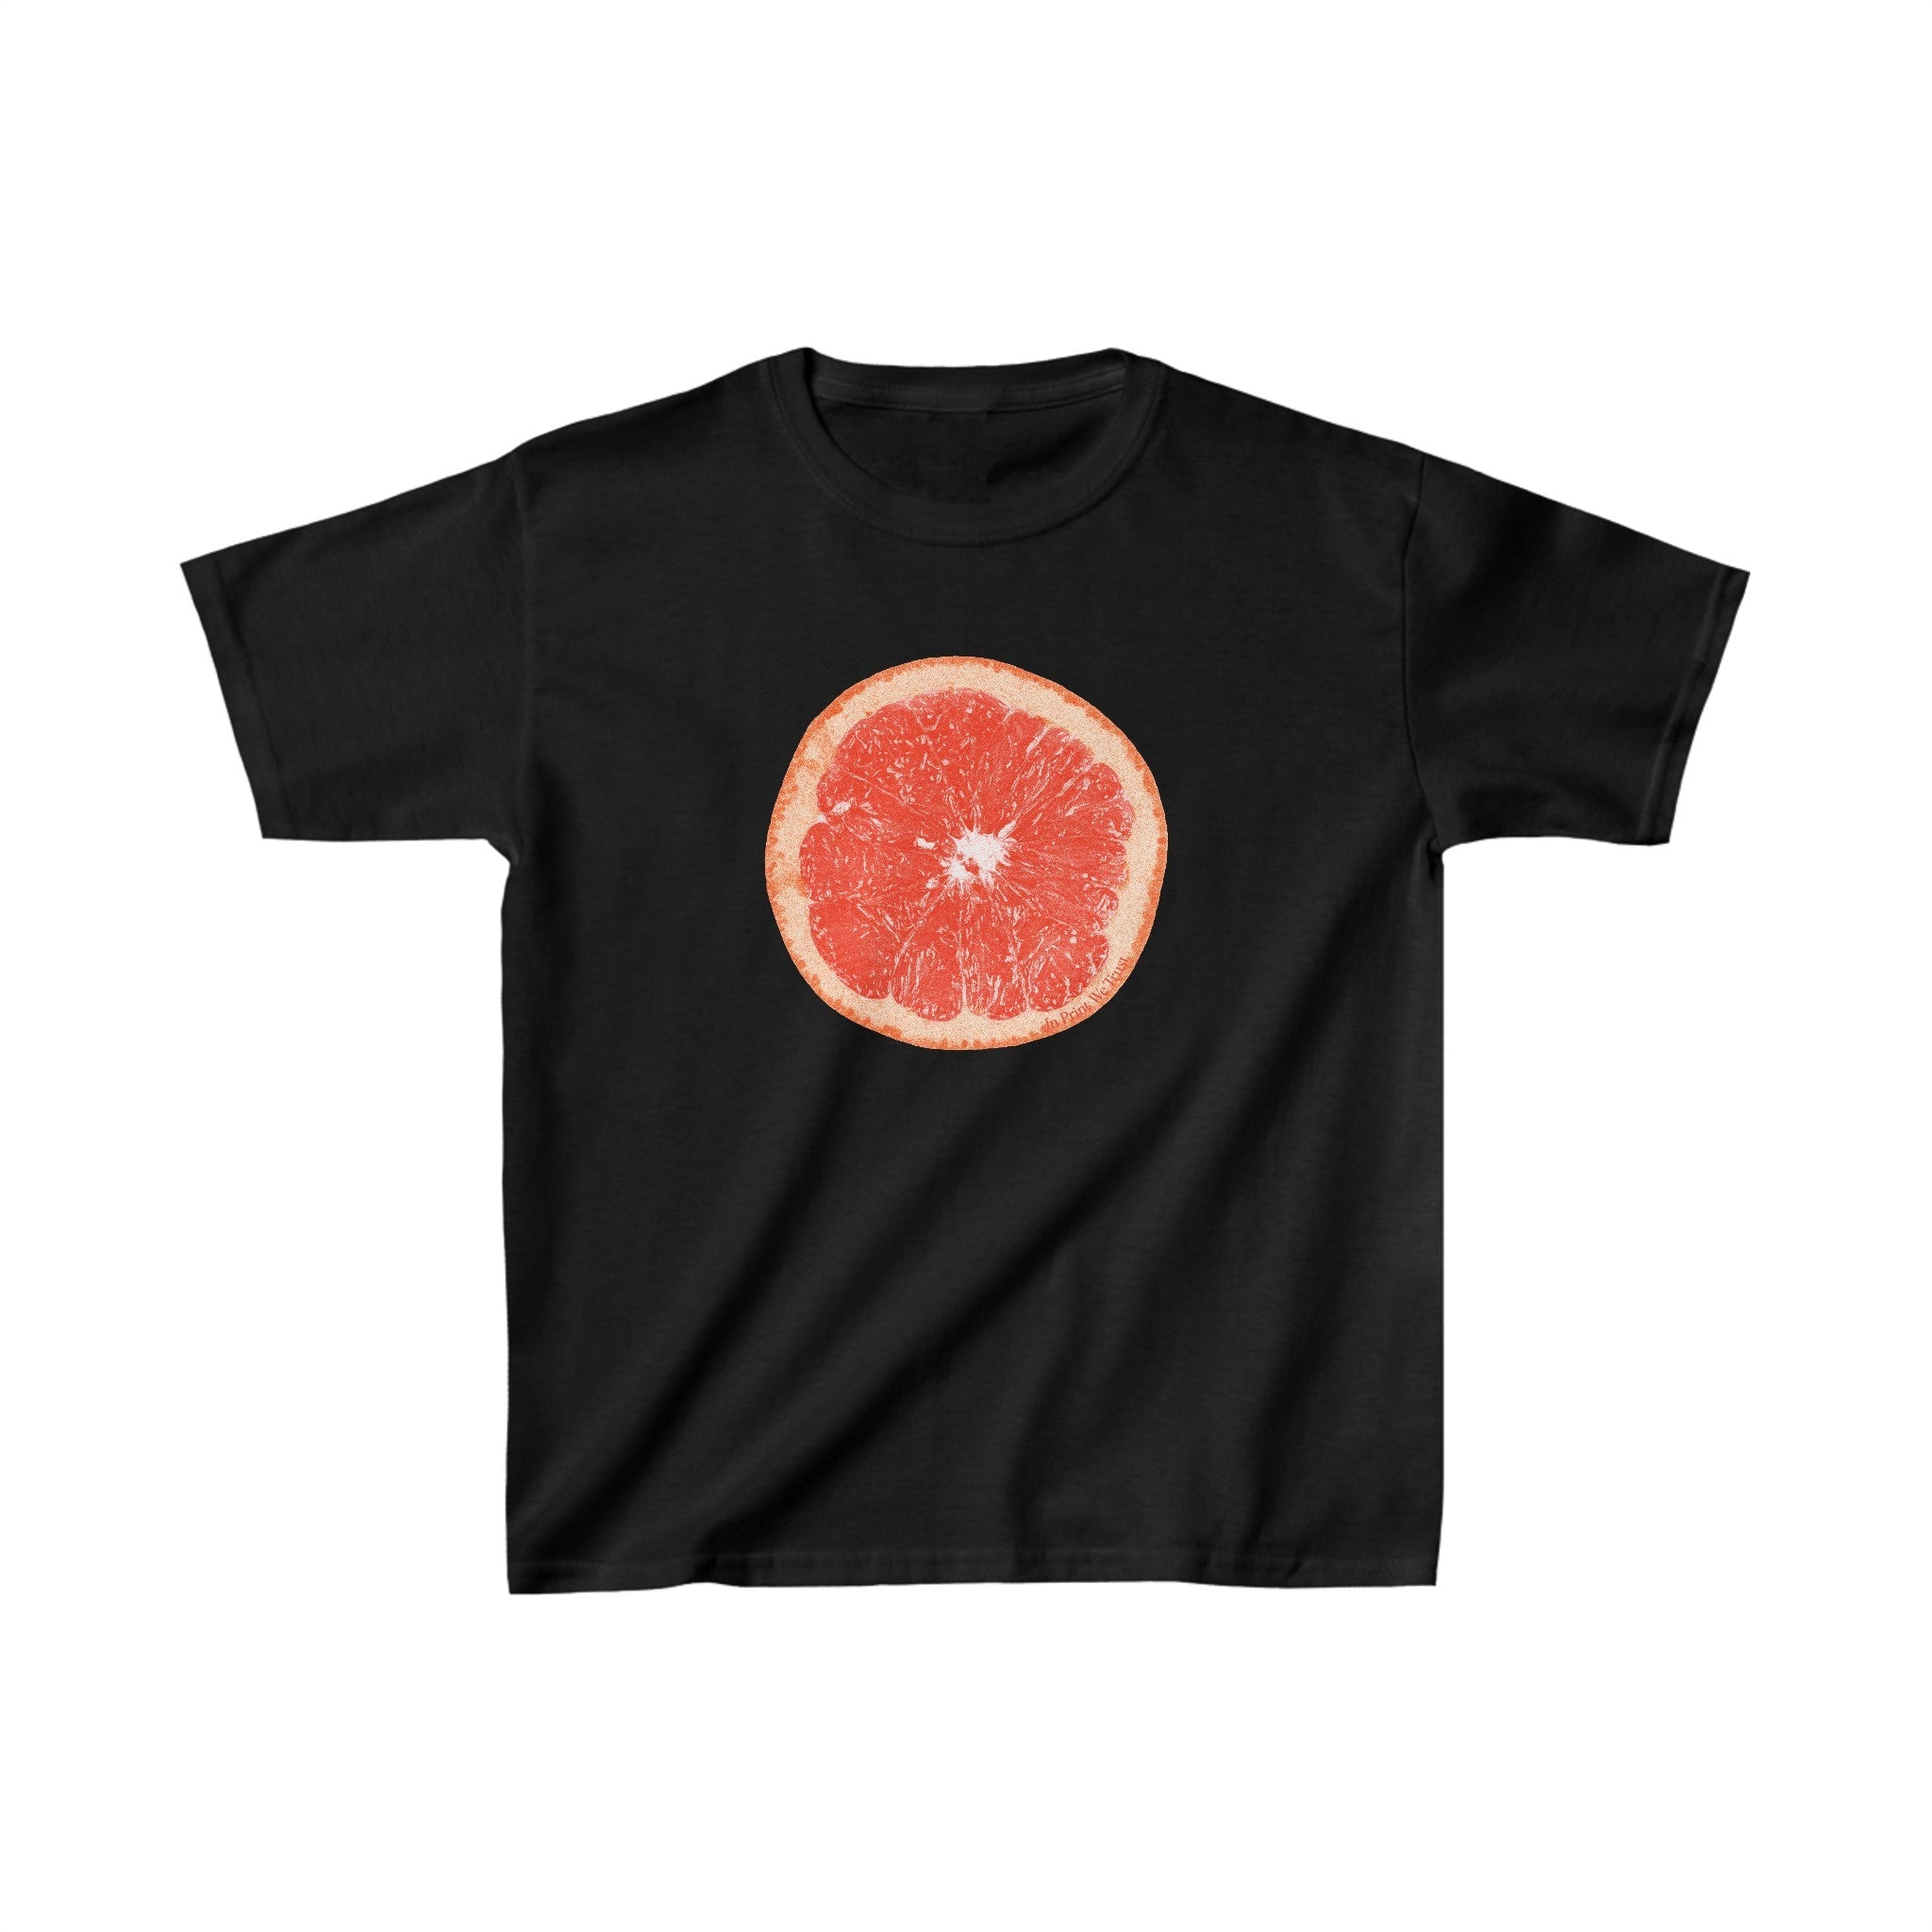 'Grapefruit' baby tee - In Print We Trust